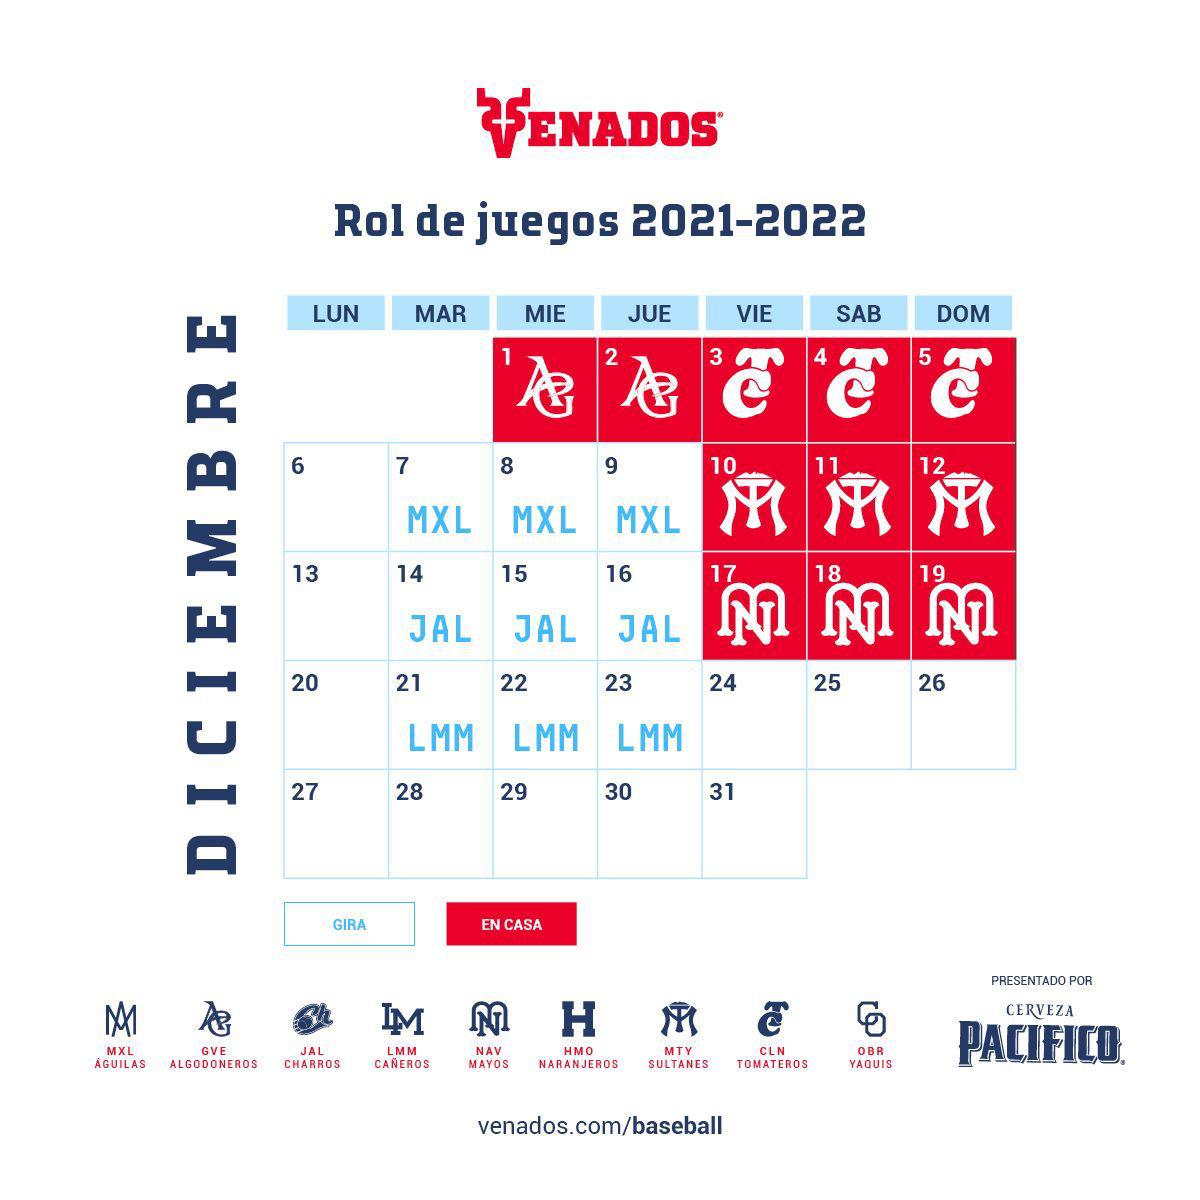 $!Liga Mexicana del Pacífico destapa su calendario de la temporada 2021-2022